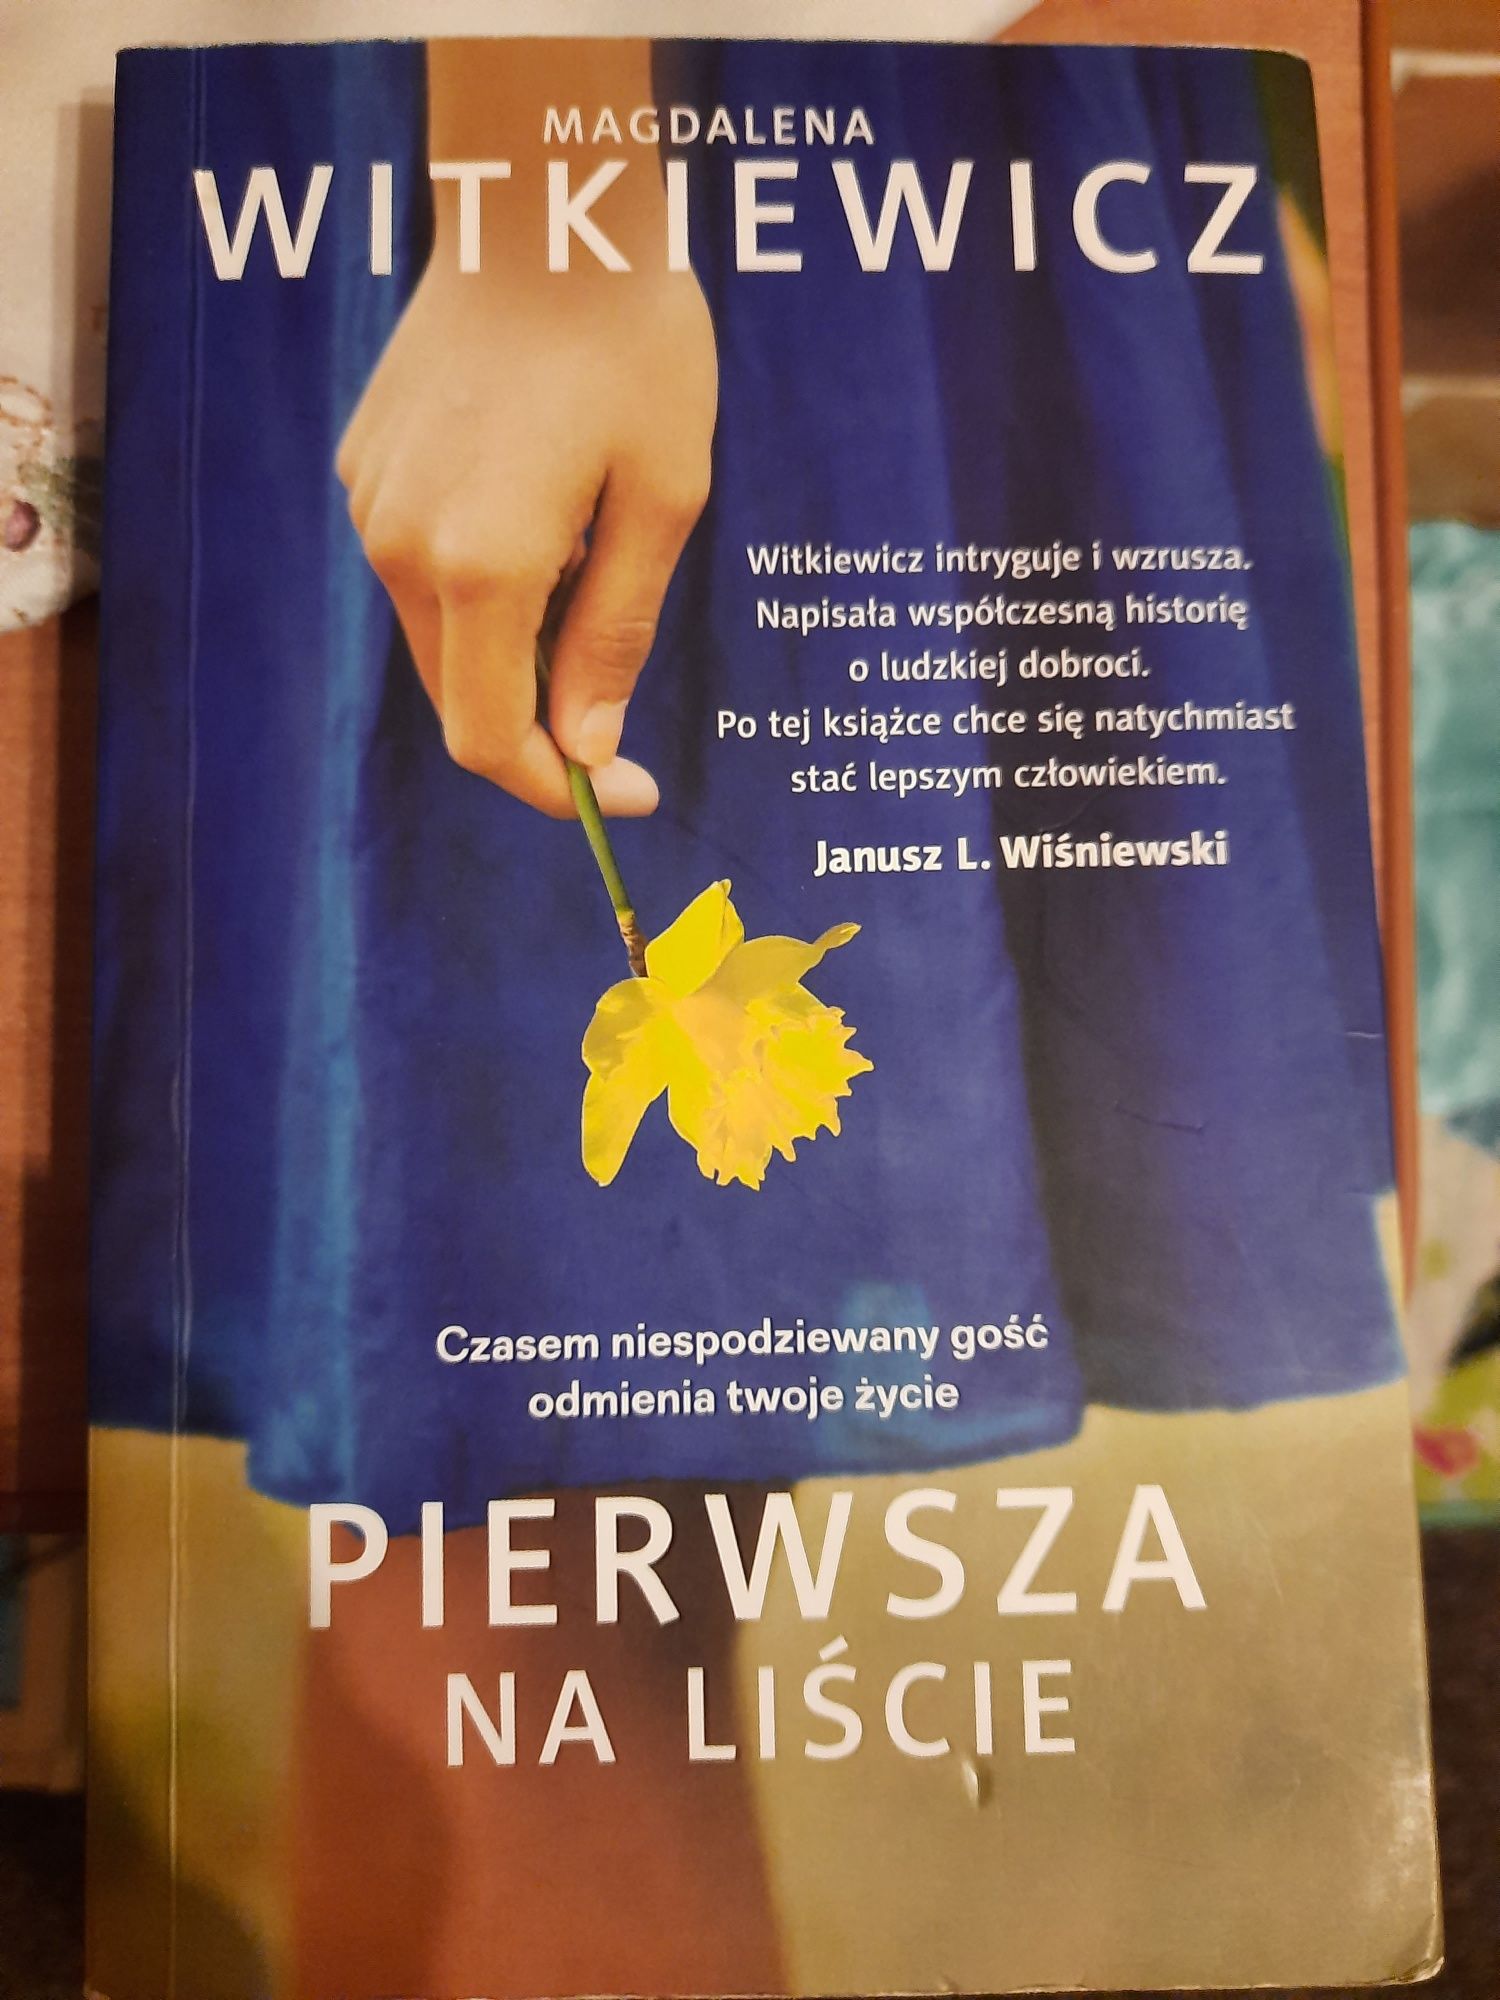 Magdalena Witkiewicz "Pierwsza na liście"